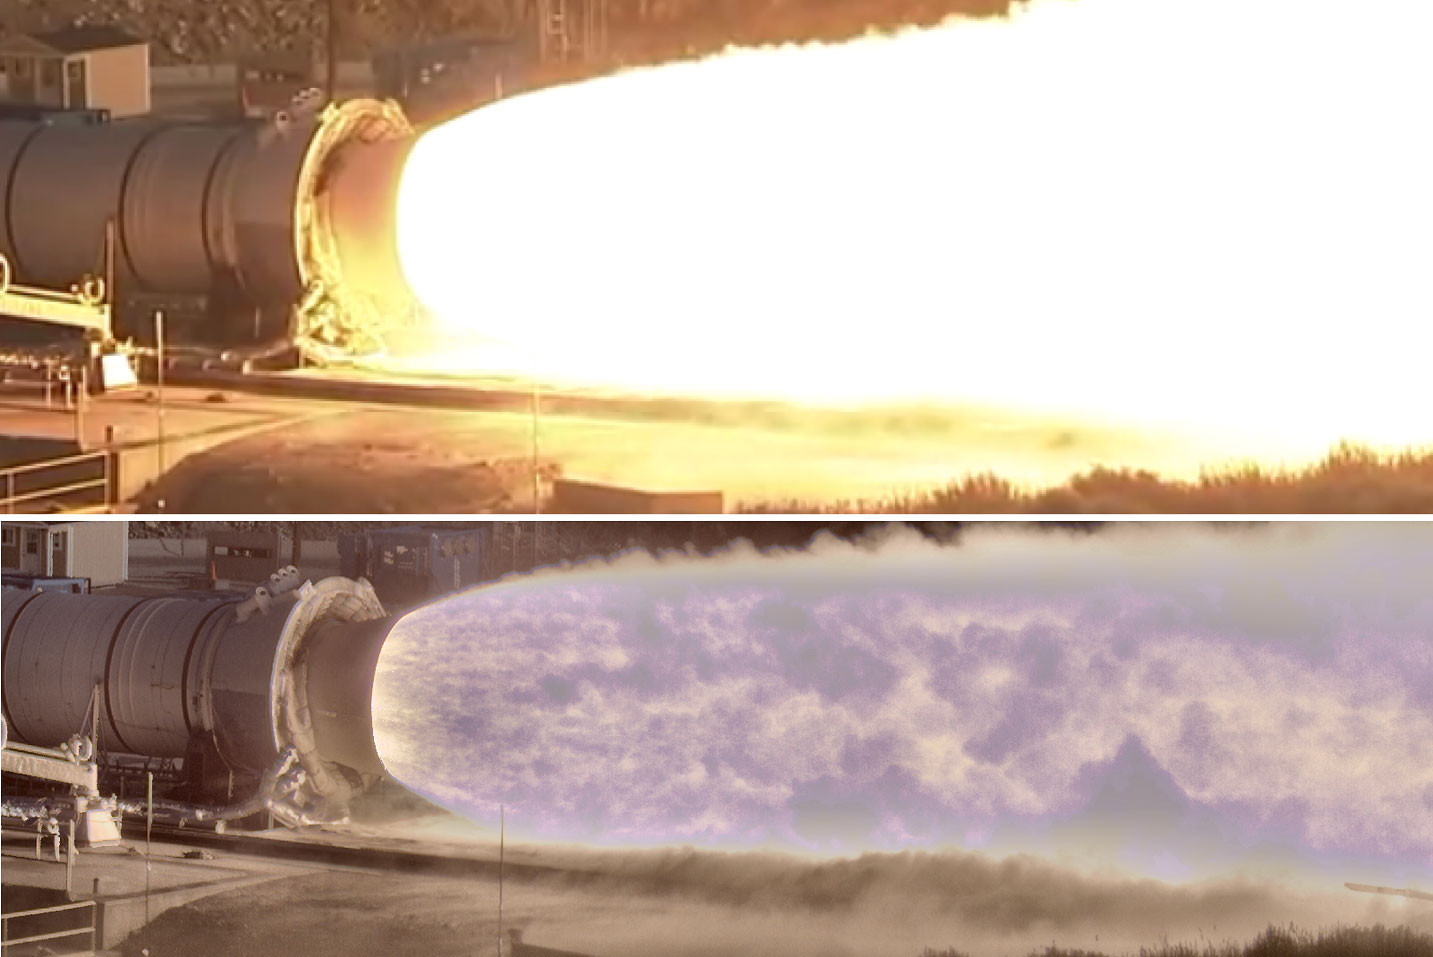 Фото пламени ракетного двигателя снятое обычной камерой и HiDyRS-X камерами. Фото: &copy; NASA